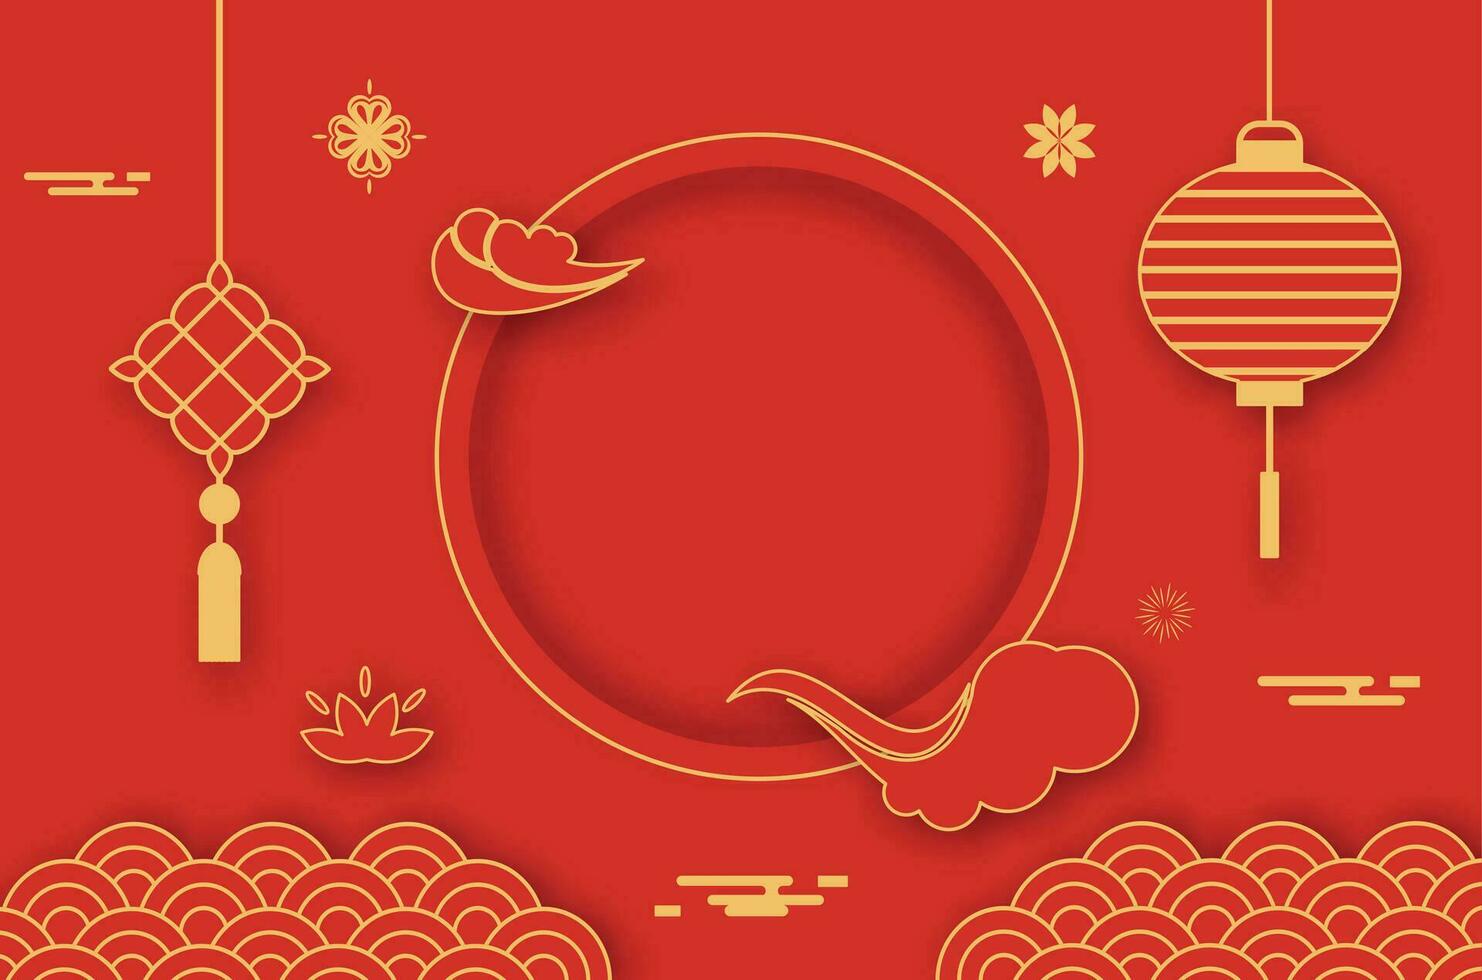 röd kort med traditionell kinesisk mönster vektor